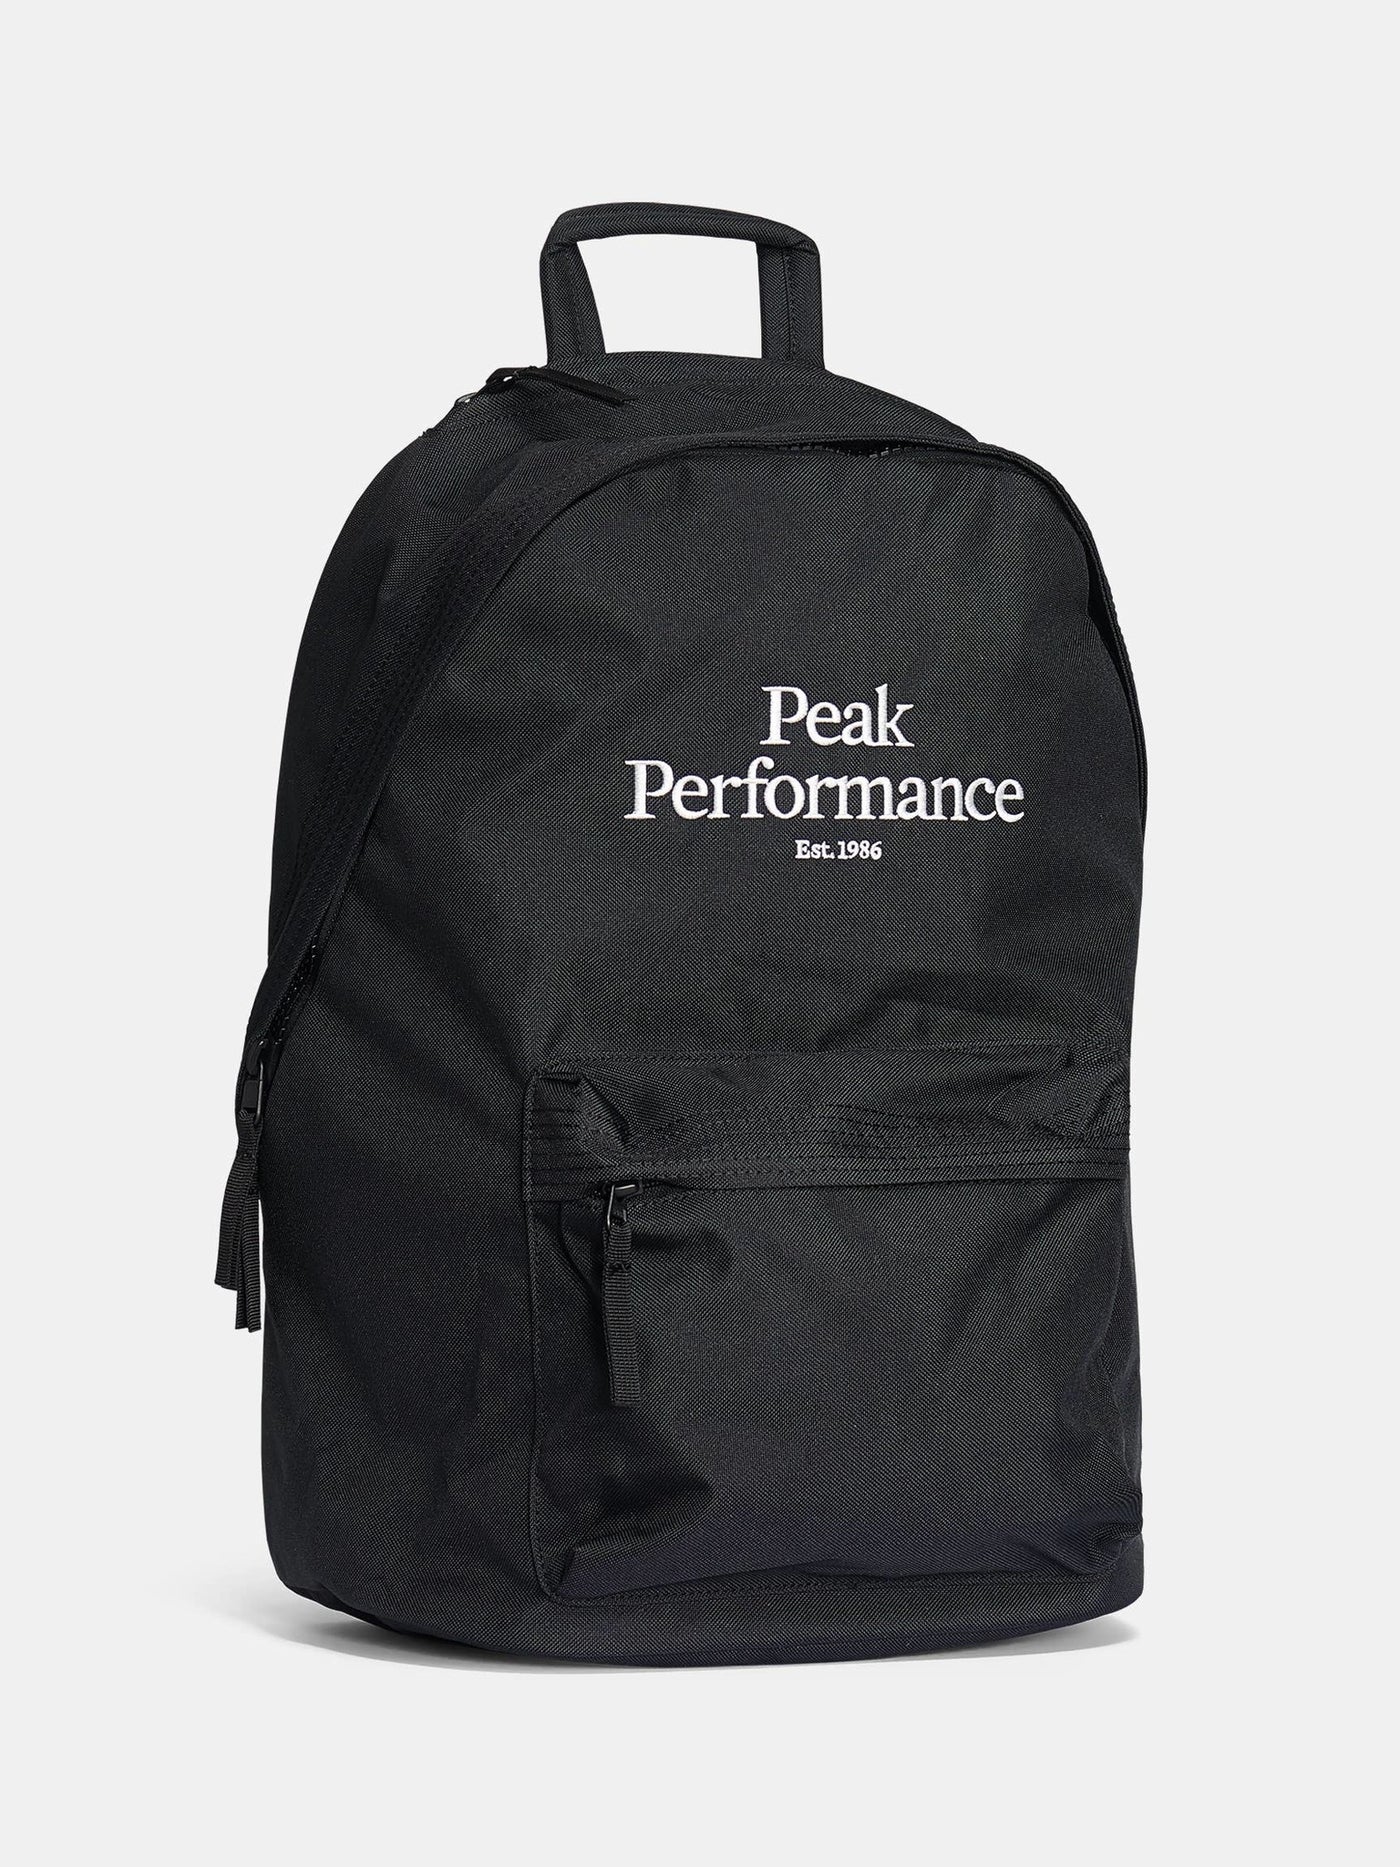 OG Backpack Village Ski Hut Peak Performance Bags, softgoods accessories, Spring 2022